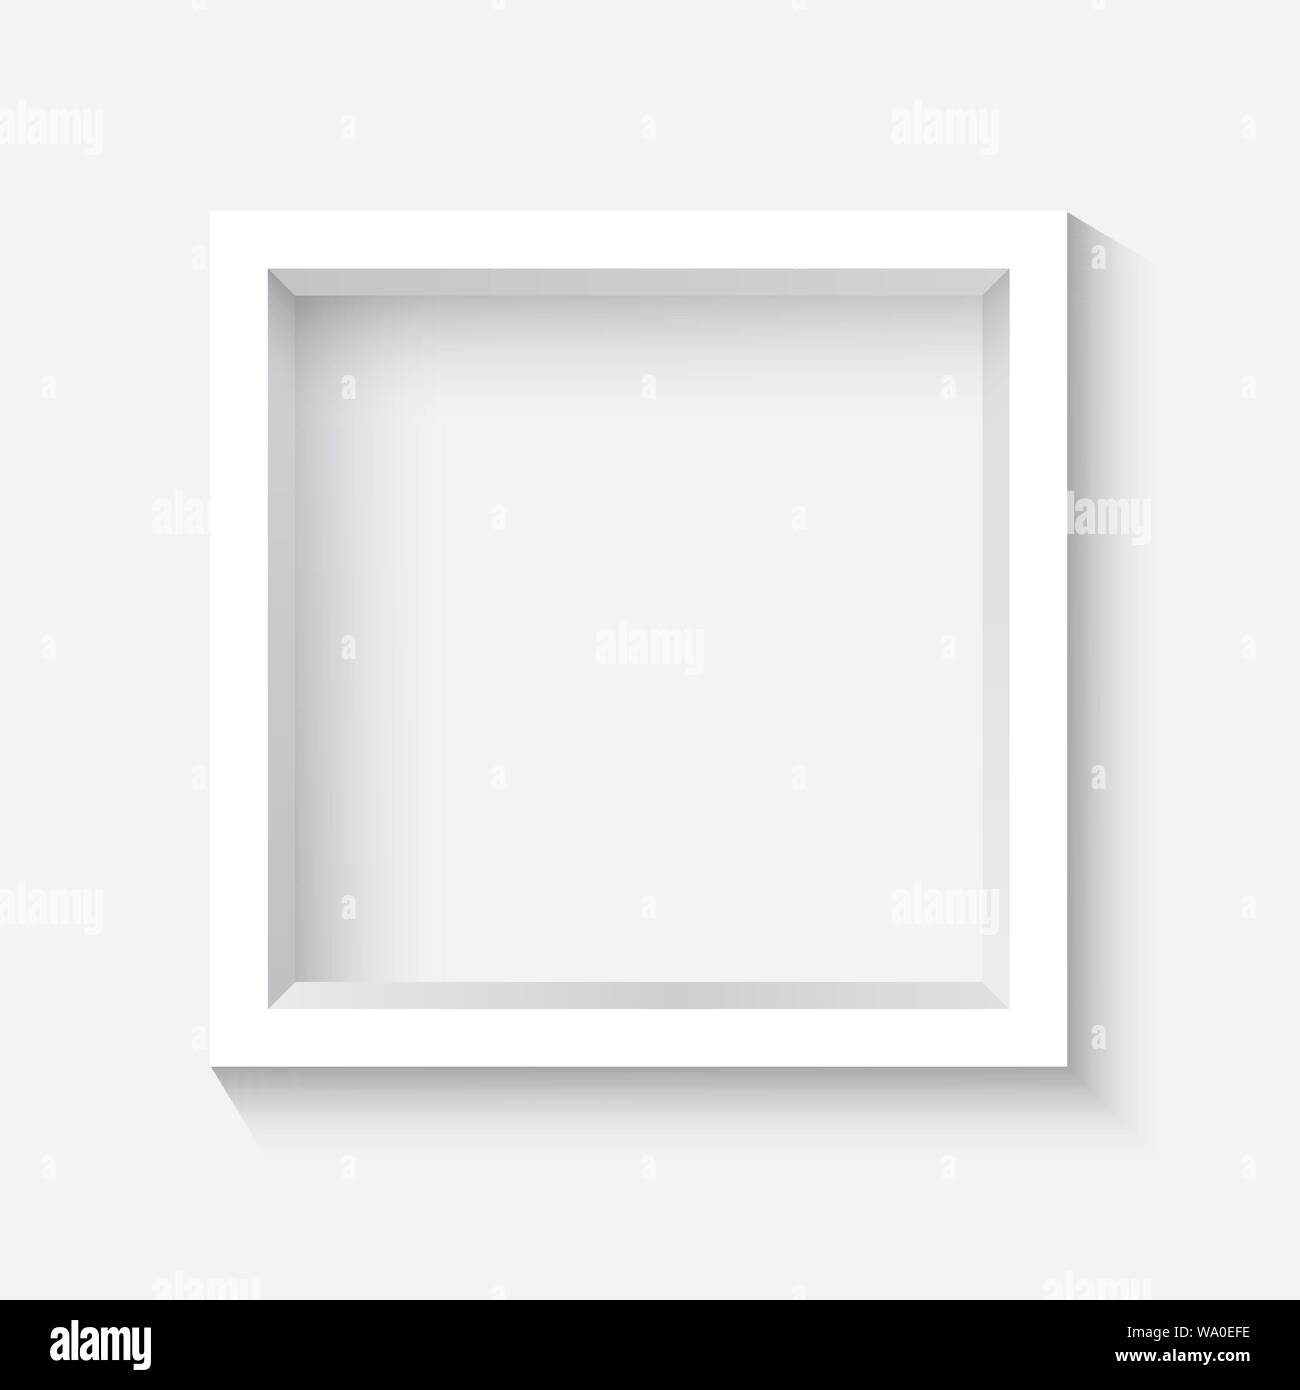 Carré blanc cadre photo 3d avec ombre Illustration de Vecteur